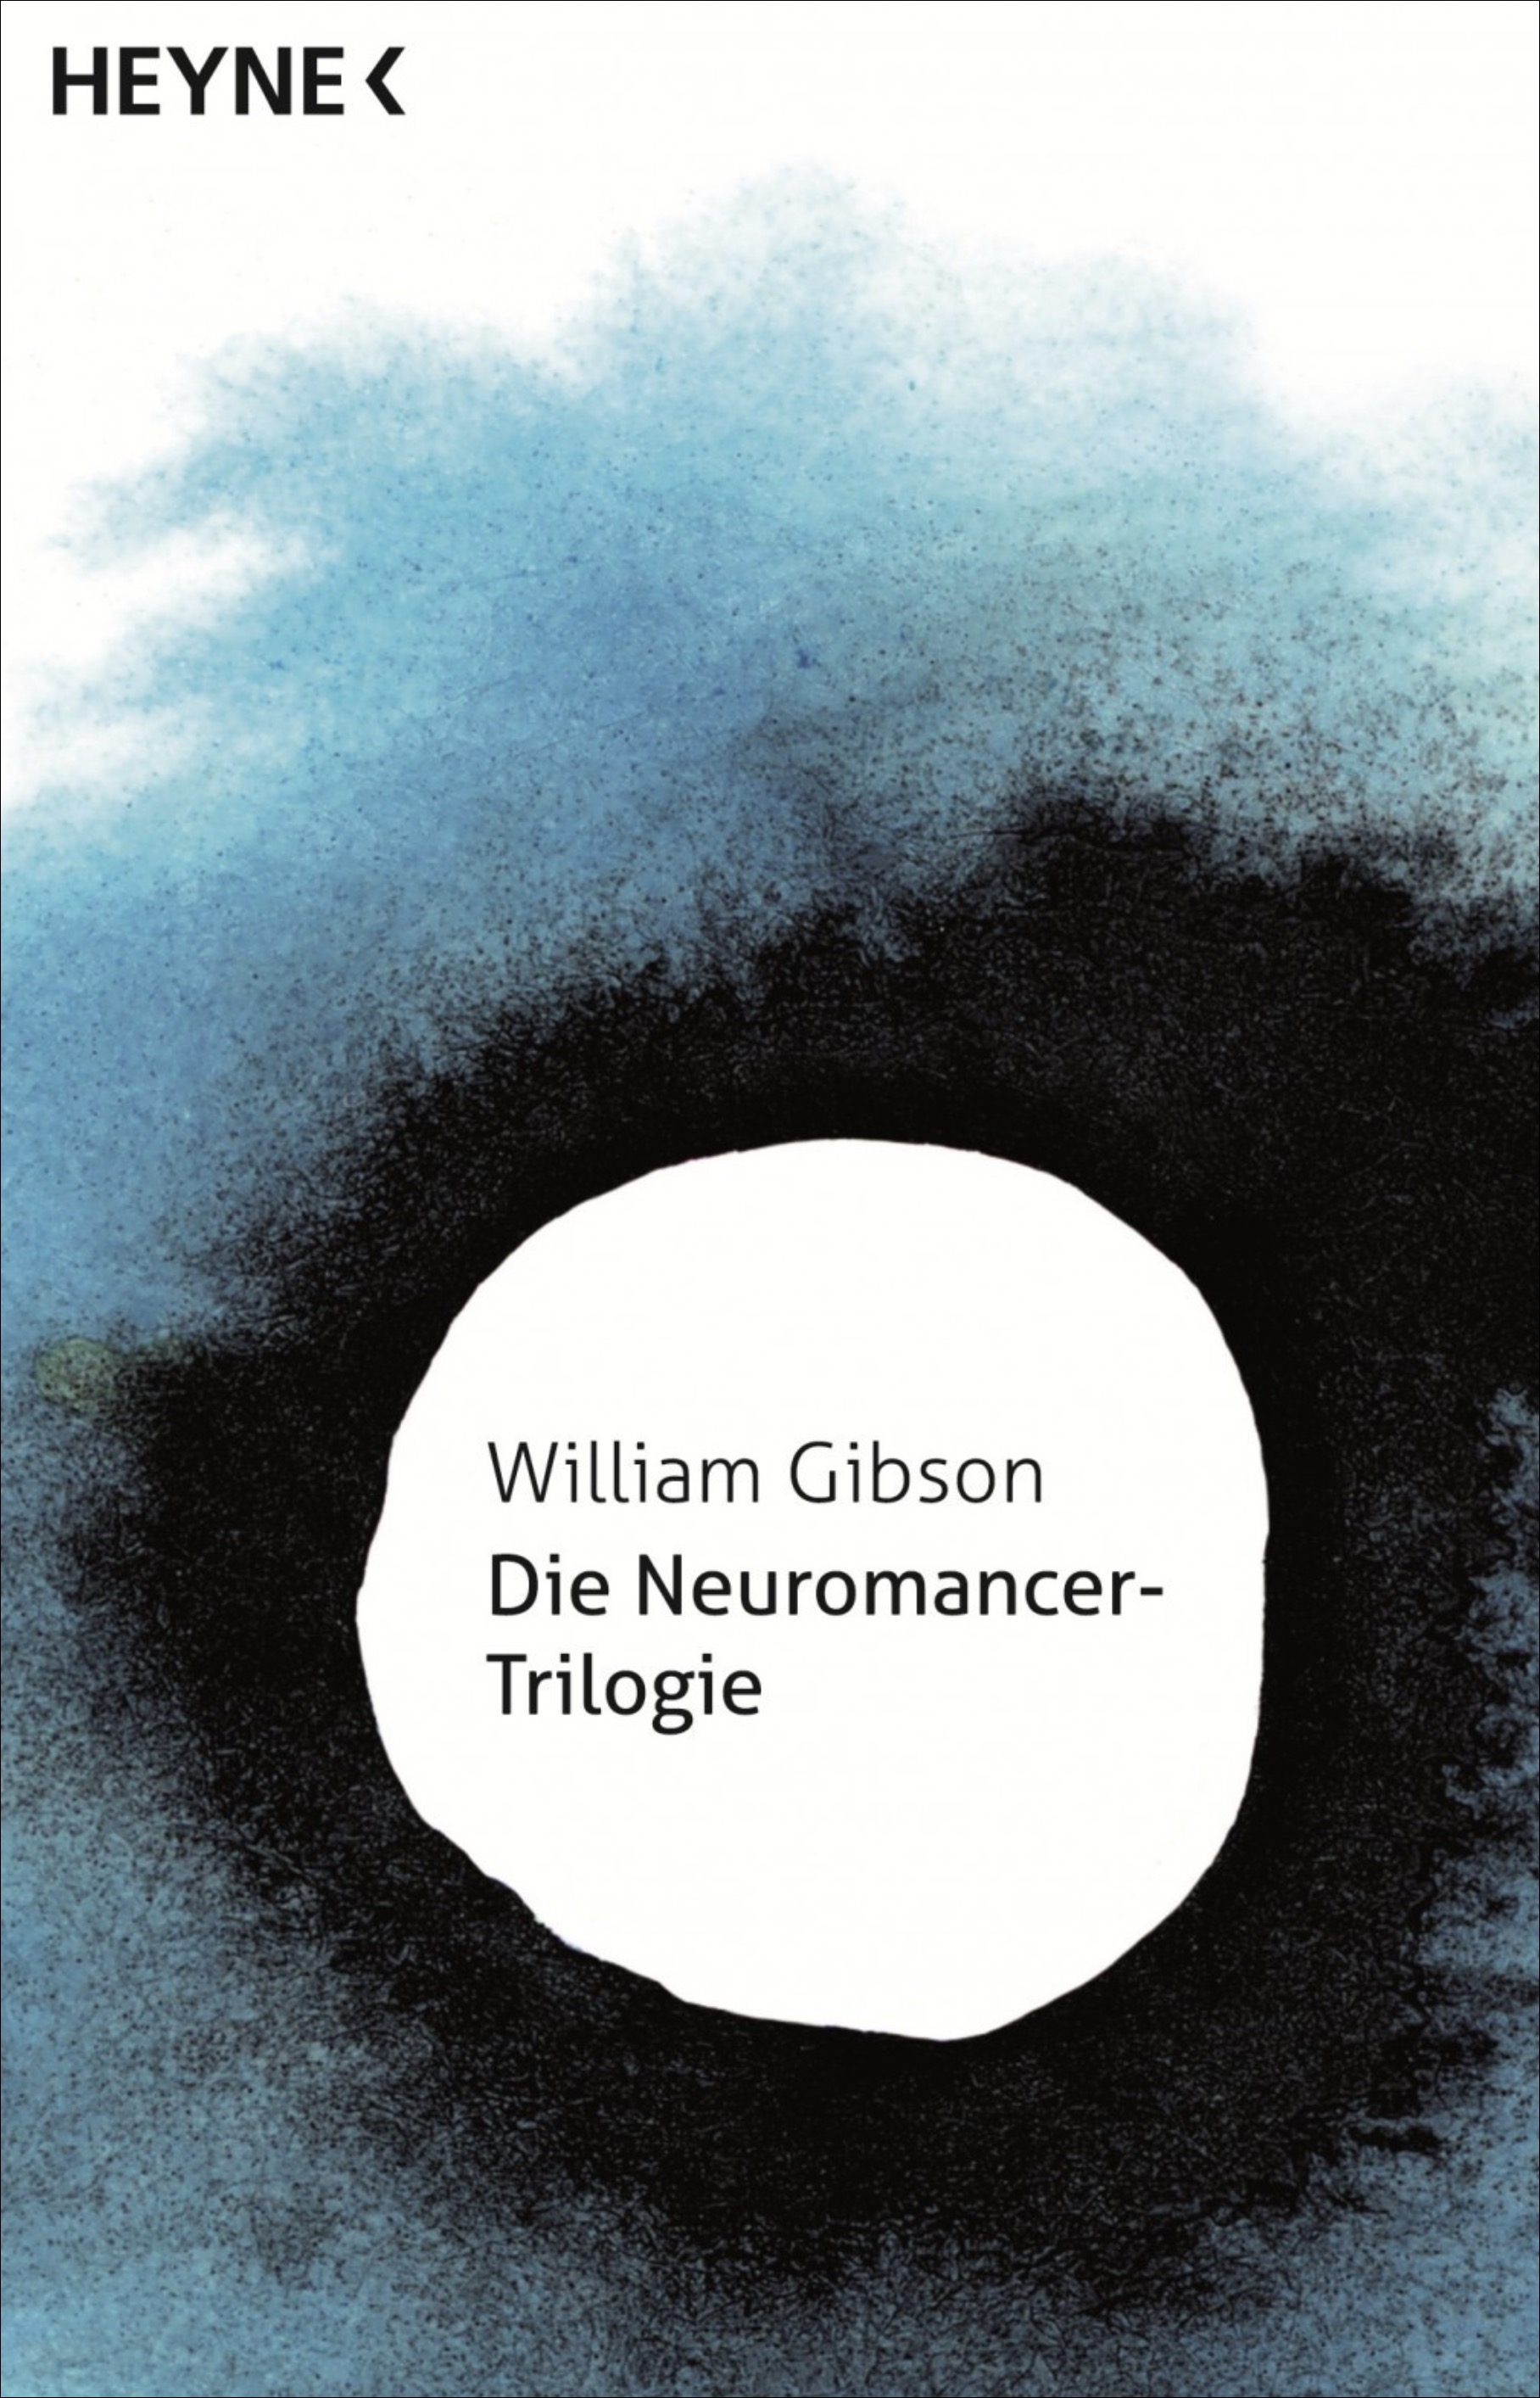 William Gibson: Die „Neuromancer-Trilogie“, erschienen im Heyne-Verlag